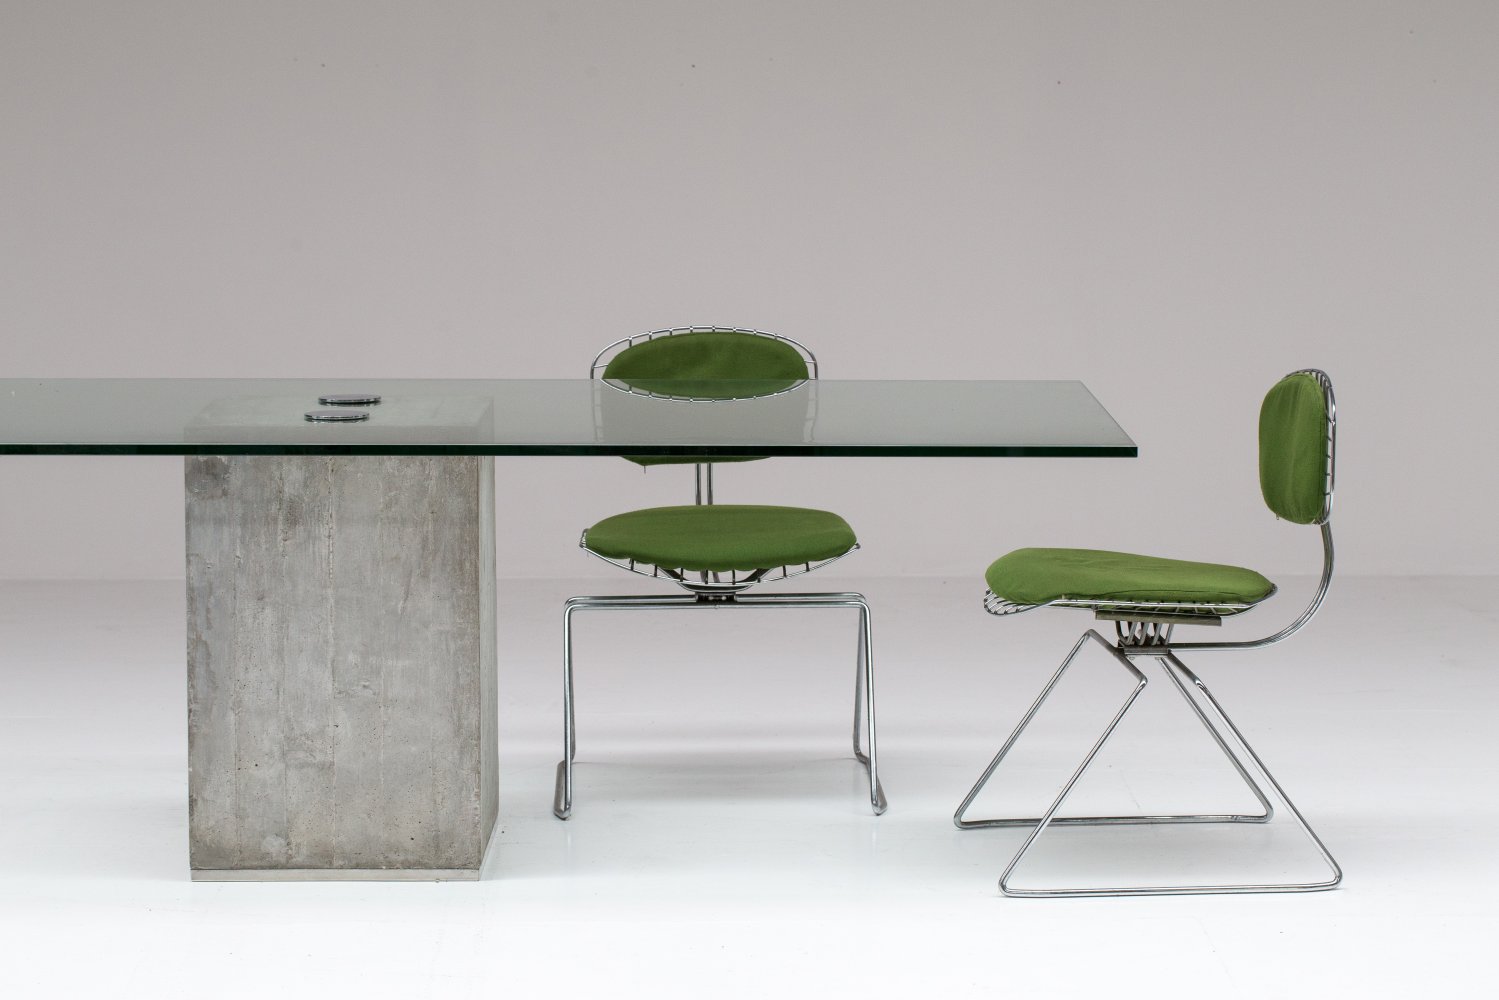 Saporiti concrete & glass table.